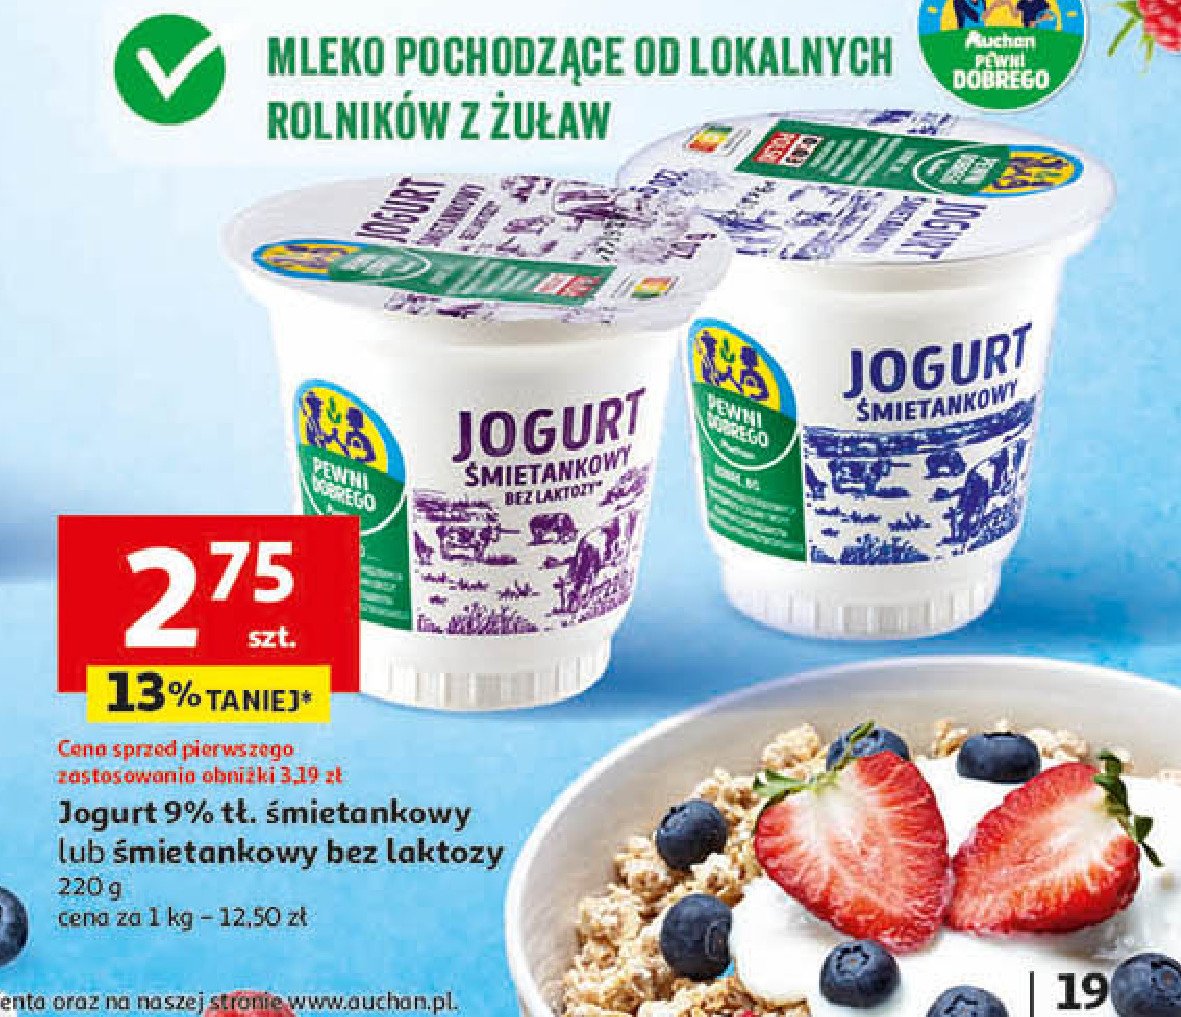 Jogurt śmietankowy bez laktozy Auchan pewni dobrego promocja